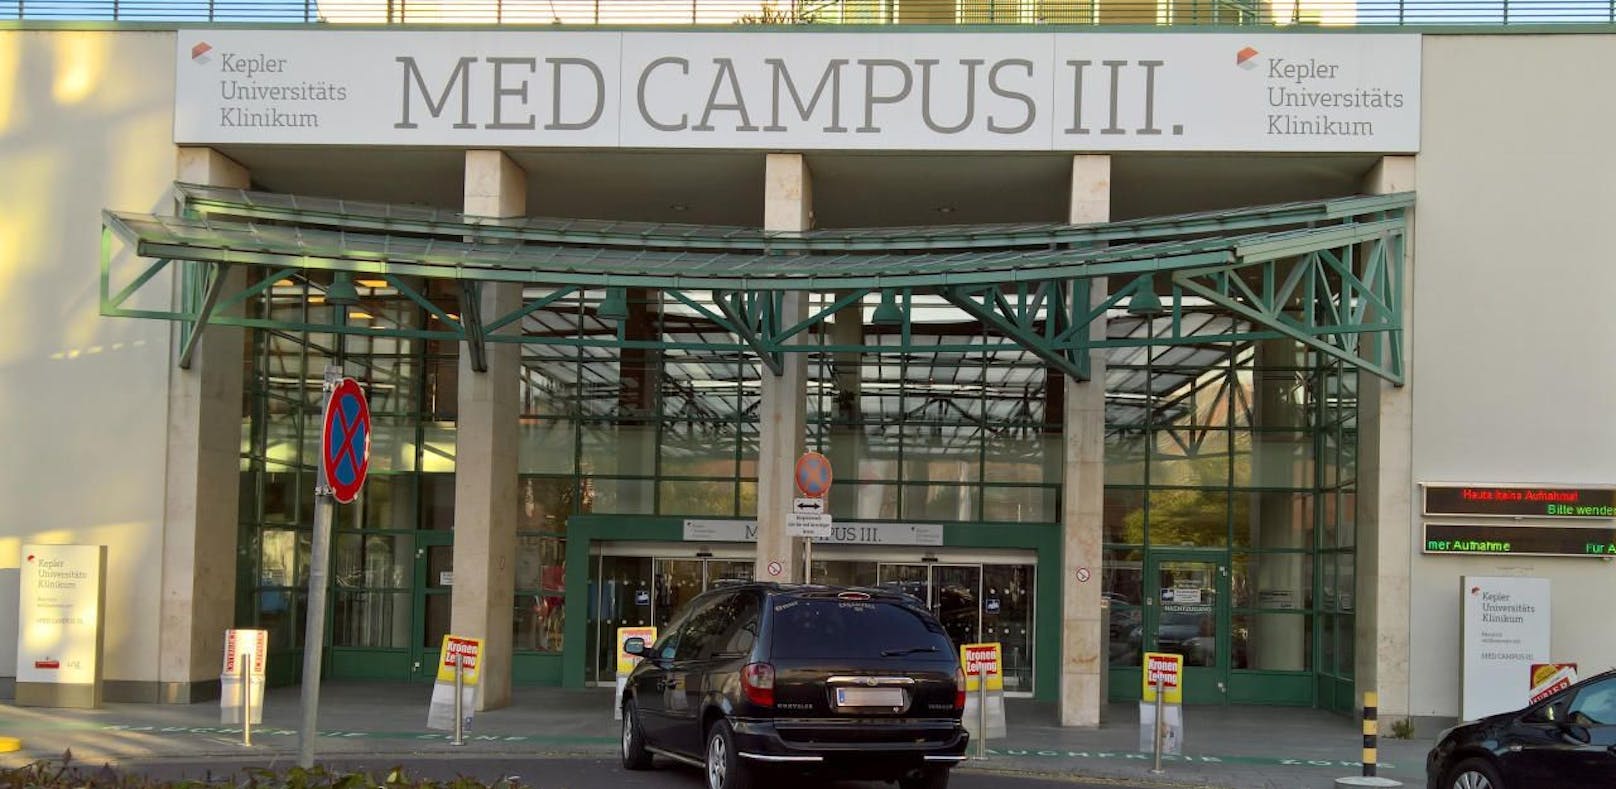 Am Med Campus III gab es erneut einen Todesfall im Zusammenhang mit dem Corona-Virus.